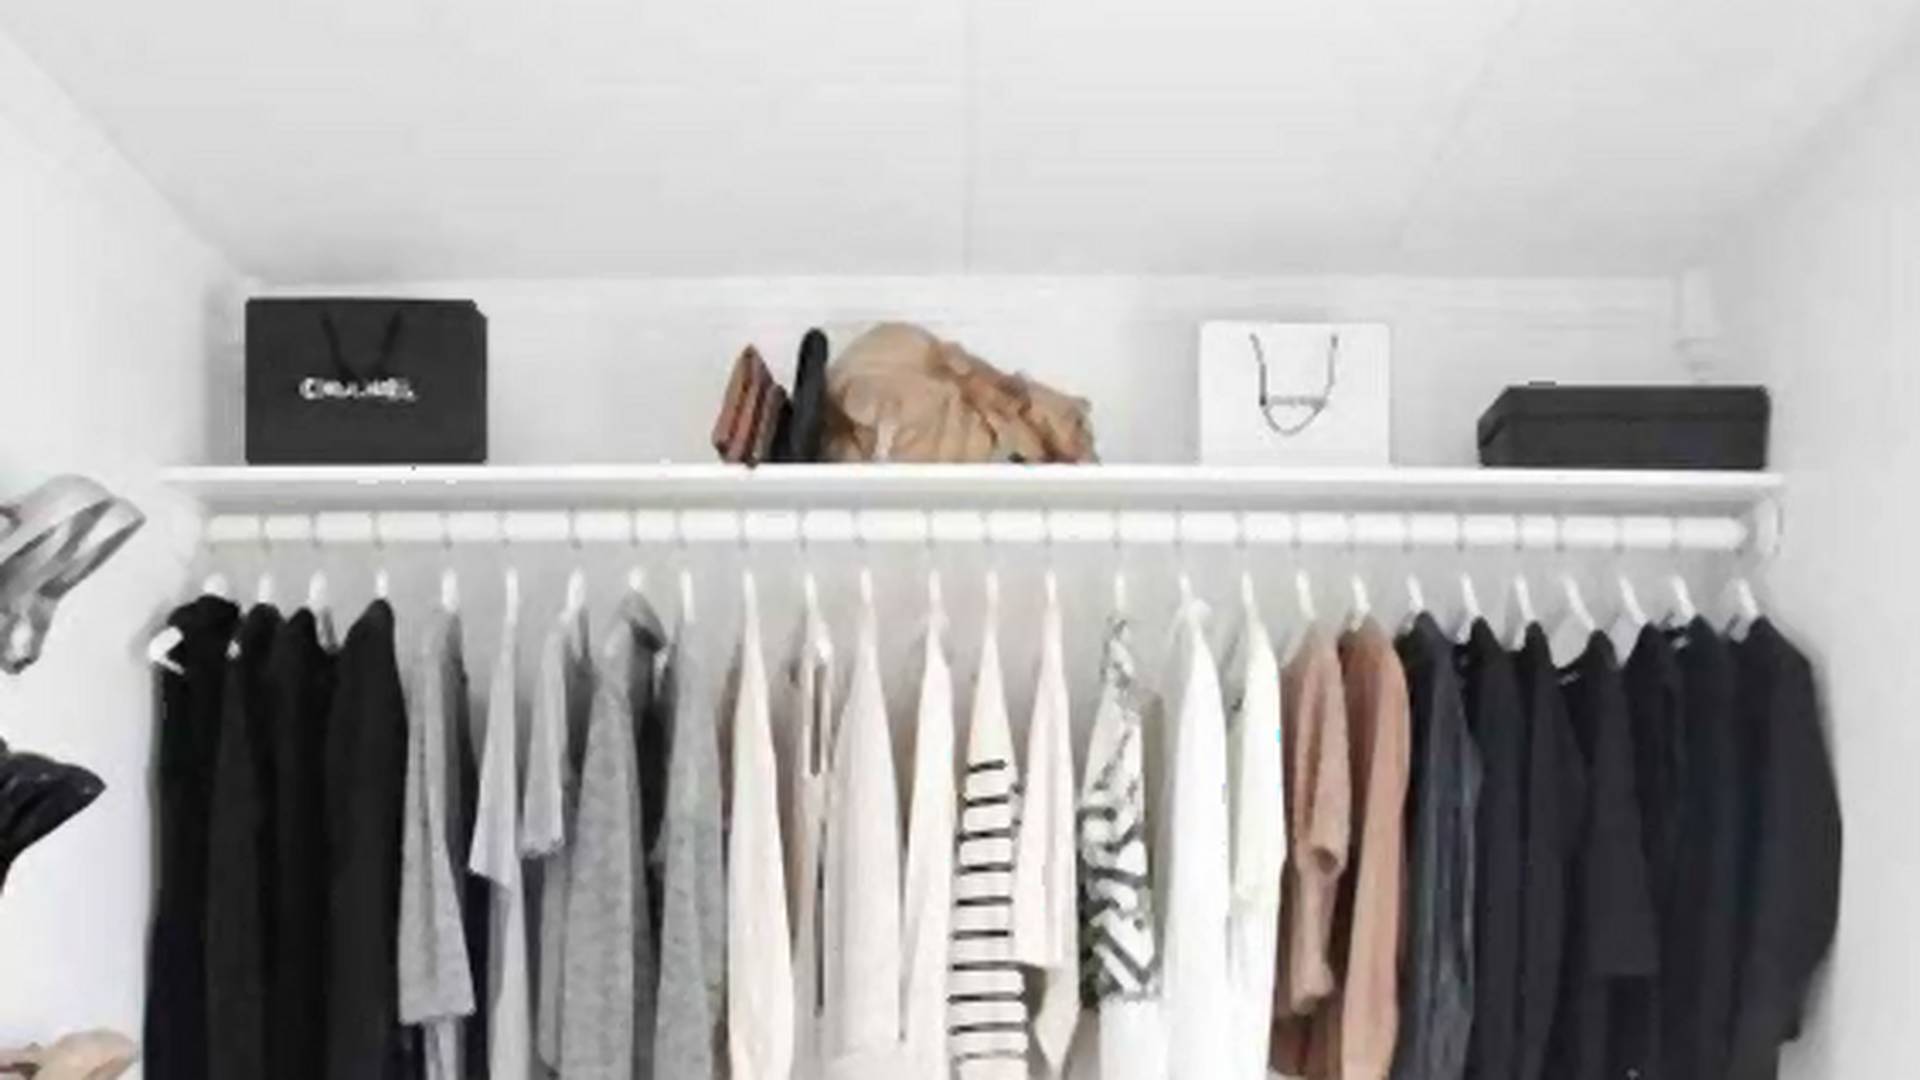 Szafy wszystkich minimalistek wyglądają tak samo: garderoba kapsułowa. Tylko 37 ubrań!